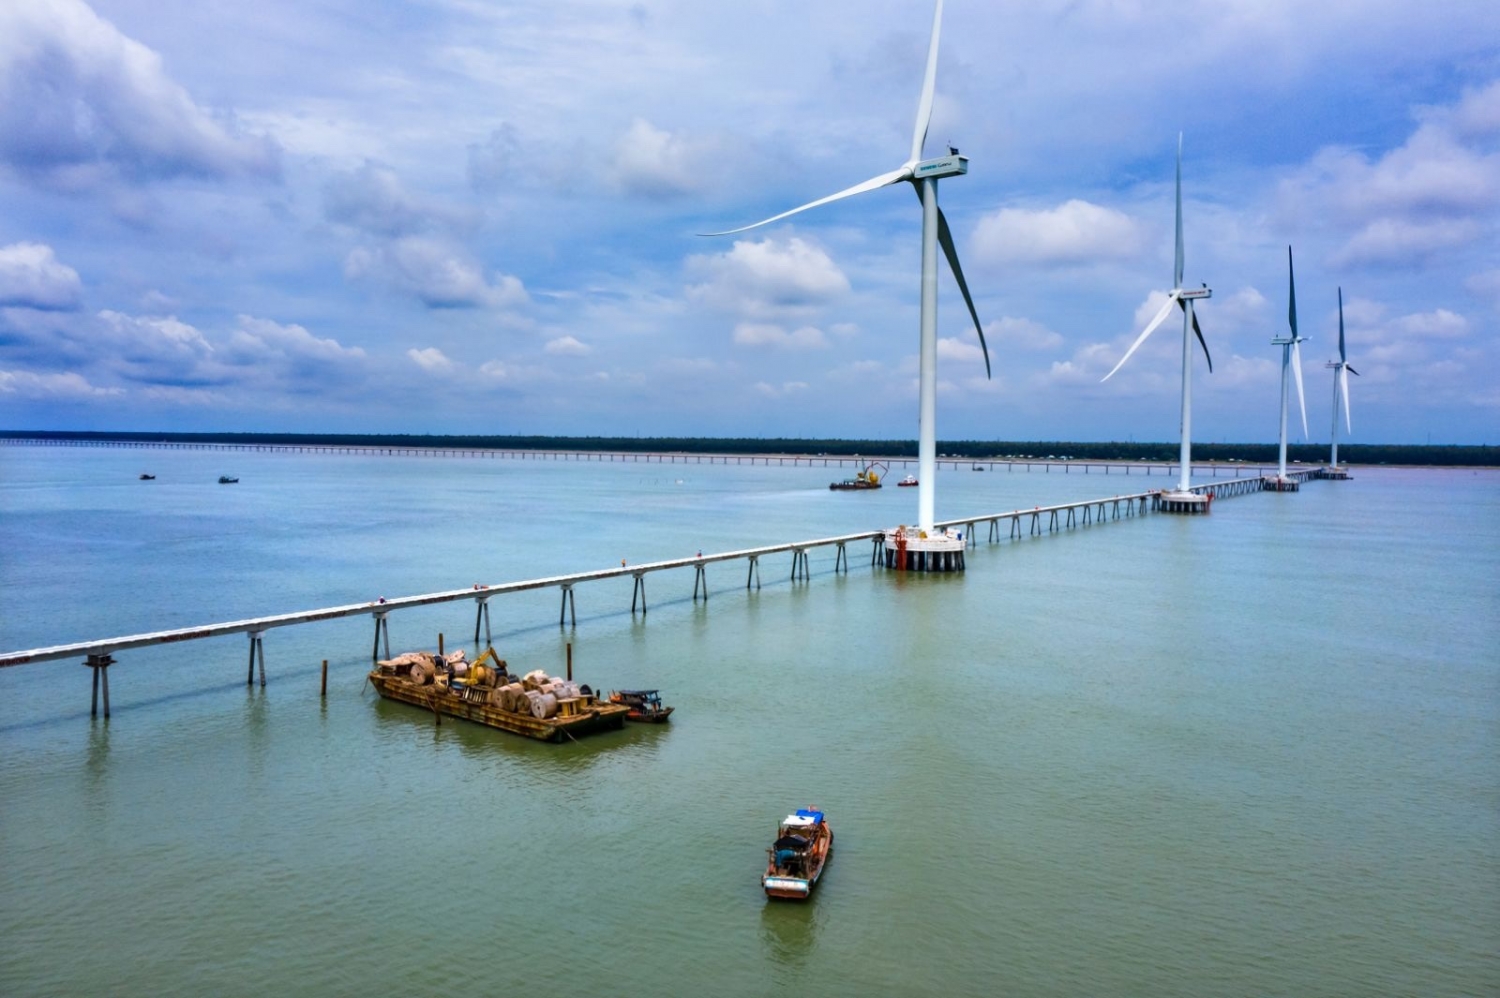 Dự án nhà máy điện gió Đông Hải 1 tại tỉnh Trà Vinh vừa hoàn thành lắp đặt trụ gió cuối cùng trong tổng số 25 trụ gió của nhà máy.